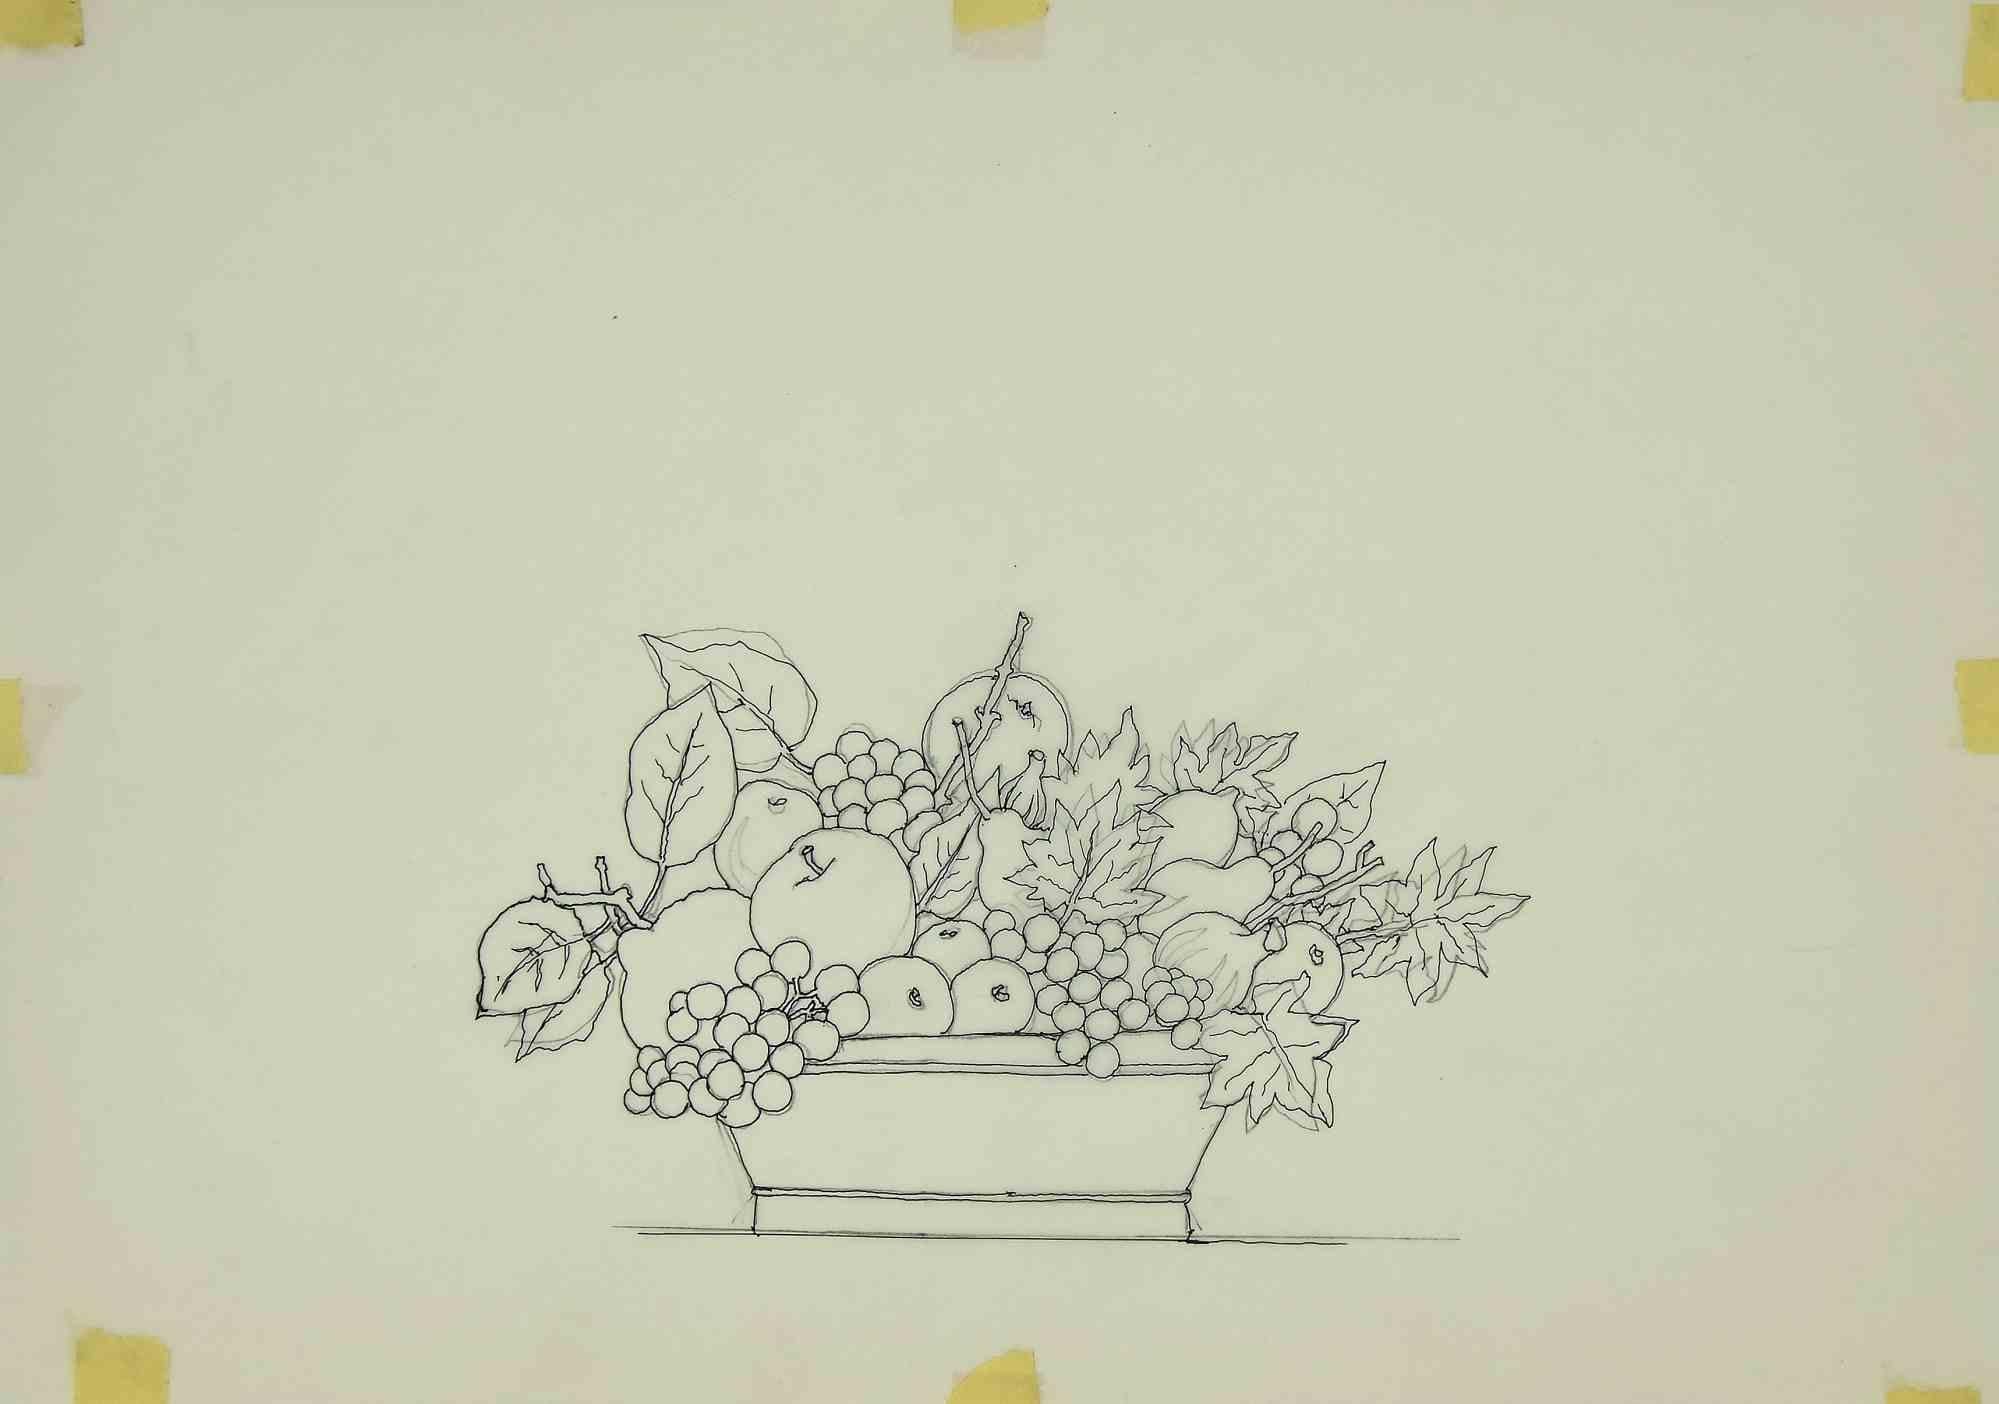 Stillleben ist ein modernes Kunstwerk, das Leo Guida in den 1970er Jahren geschaffen hat.

Filzstiftzeichnung auf Papier.

Guter Zustand.

Leo Guida konnte während seiner Tätigkeit mit vielen Generationen junger Menschen ein produktives Gespräch